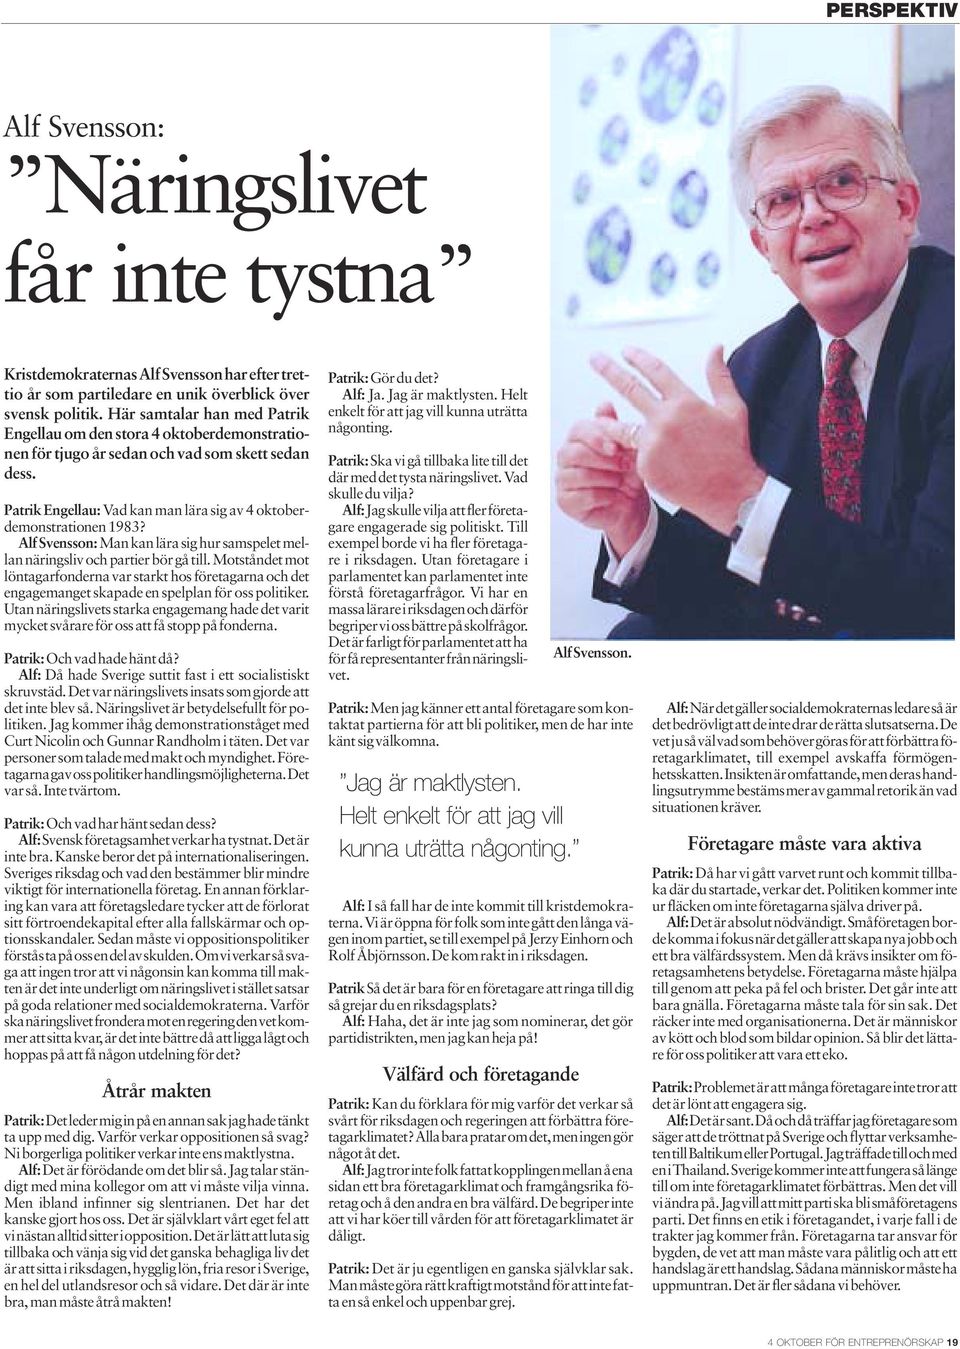 Alf Svensson: Man kan lära sig hur samspelet mellan näringsliv och partier bör gå till.